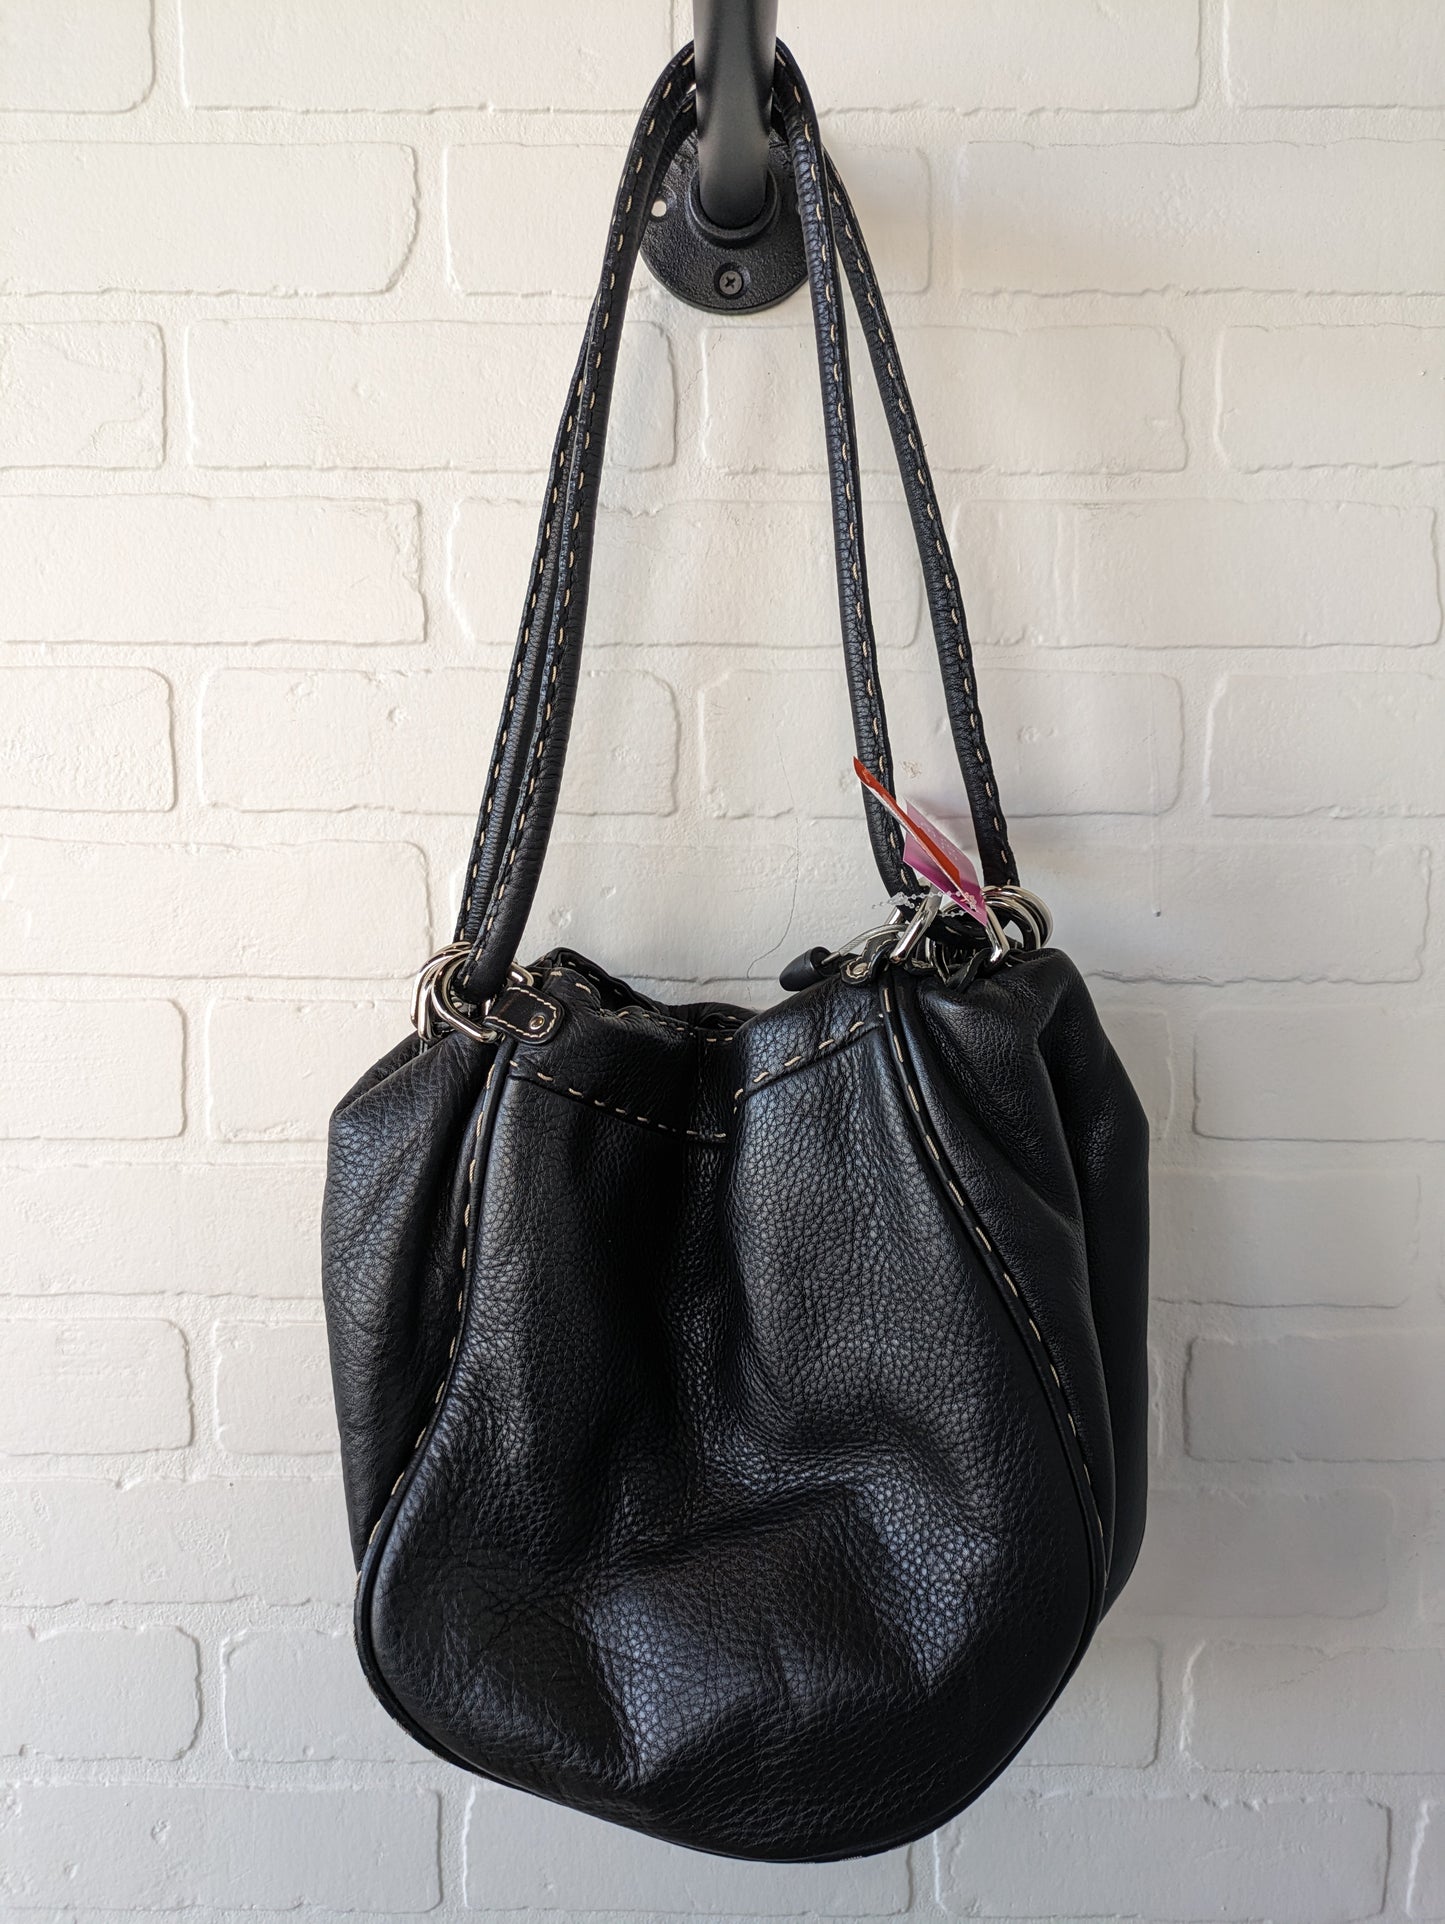 Handbag By Donald Pliner  Size: Large